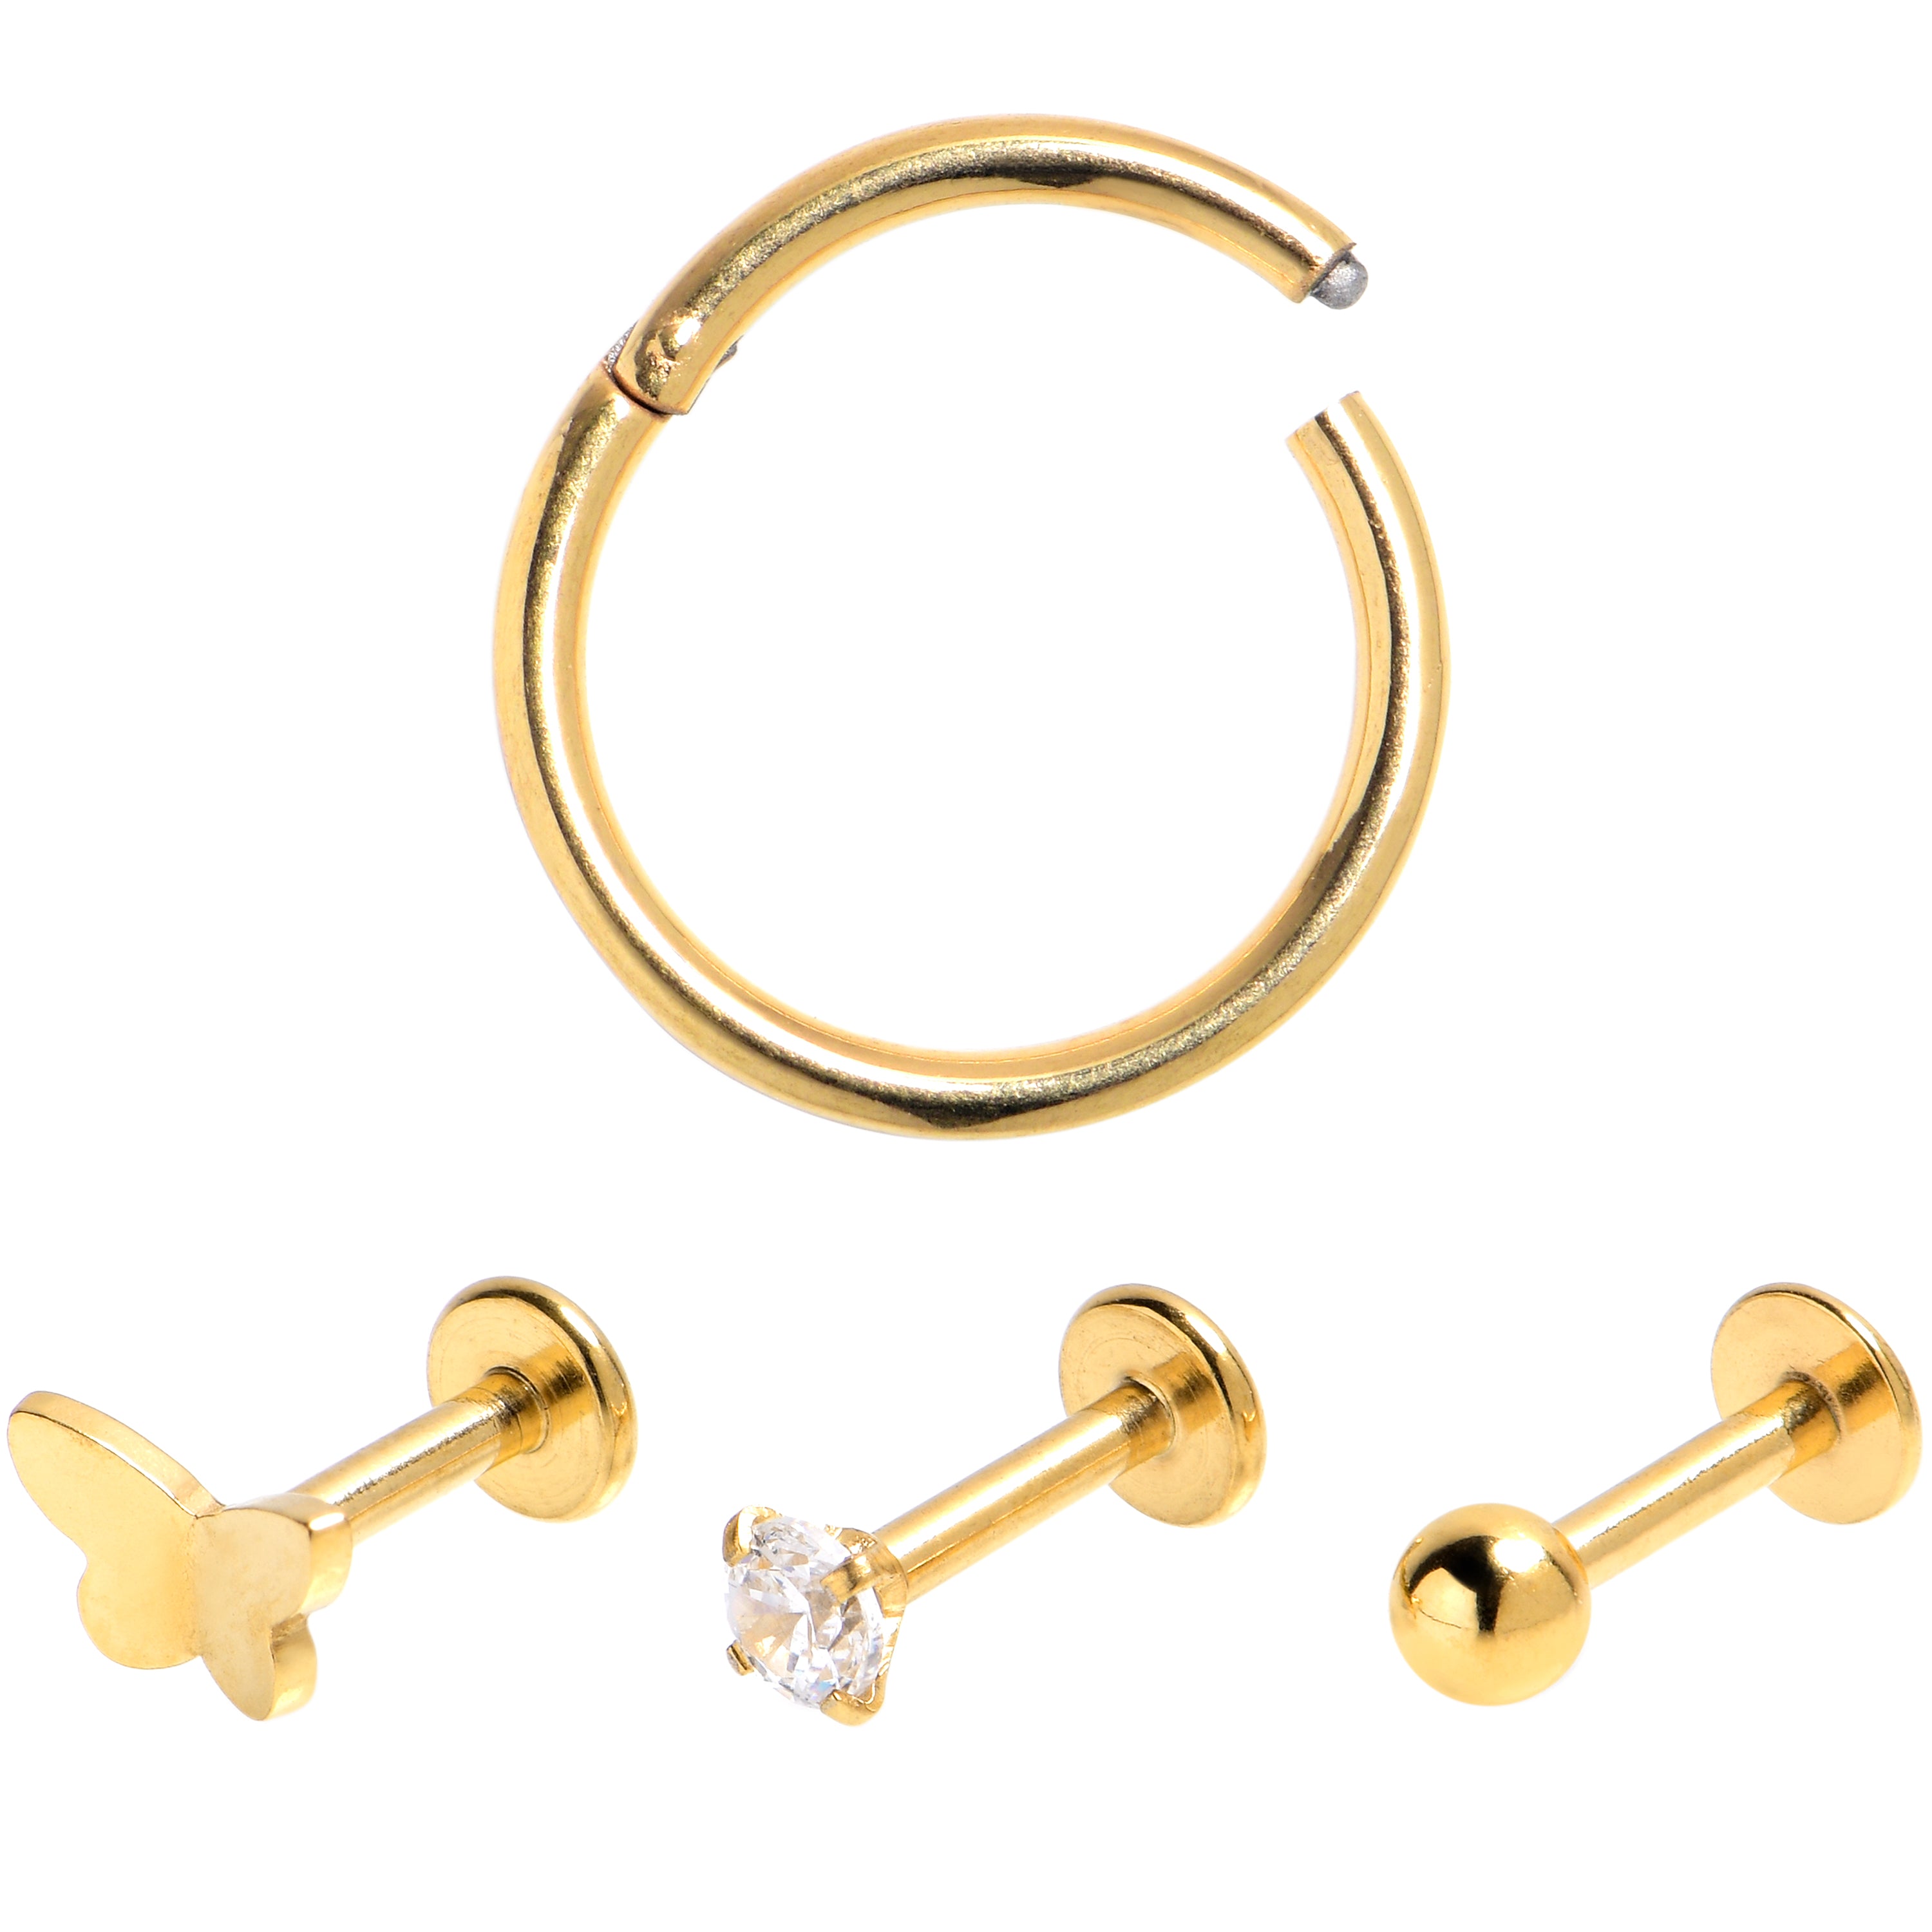 16 Gauge Clear Gem Gold Tone Simple Labret Segment Ring Set of 4